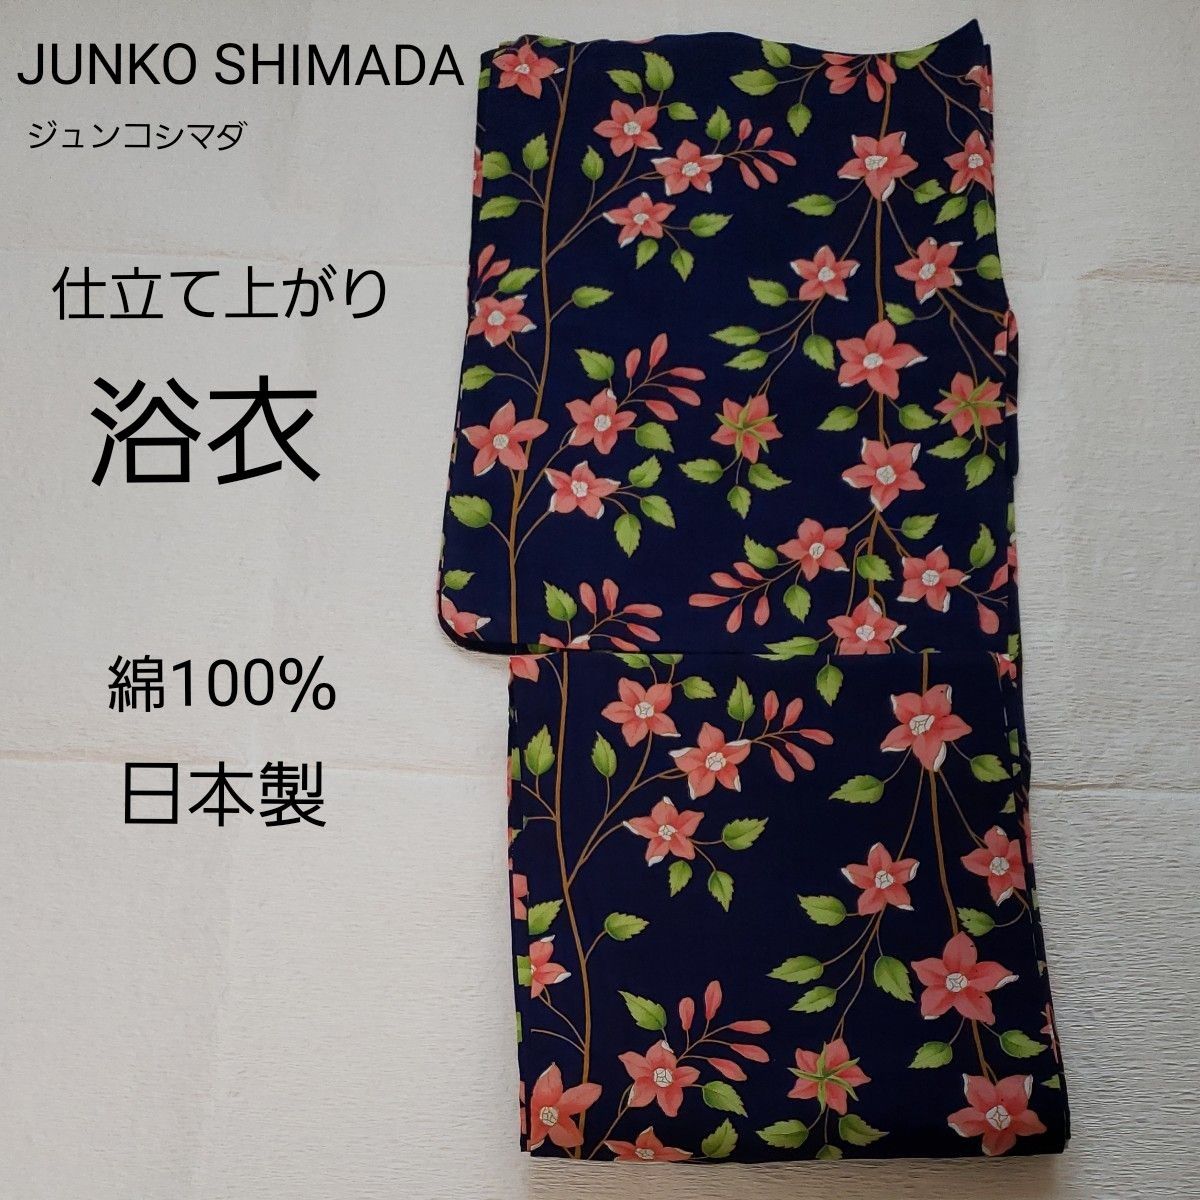 JUNKO SHIMADA 仕立て上がり 浴衣 ミッドナイト 花柄 ボタニカル 綿 ブランド ゆかた 濃紺 ジュンコシマダ 単品